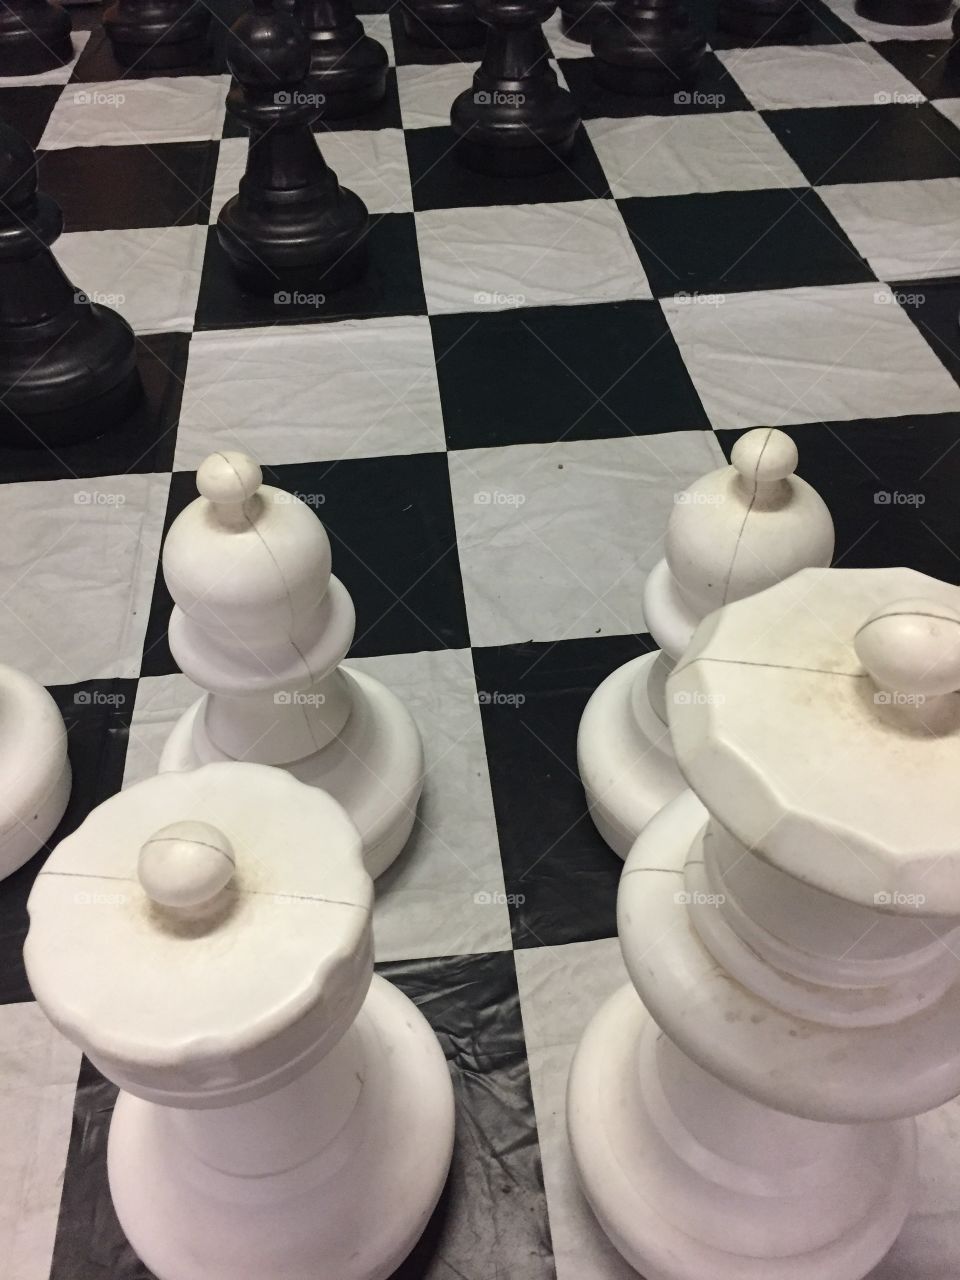 Giant chess set